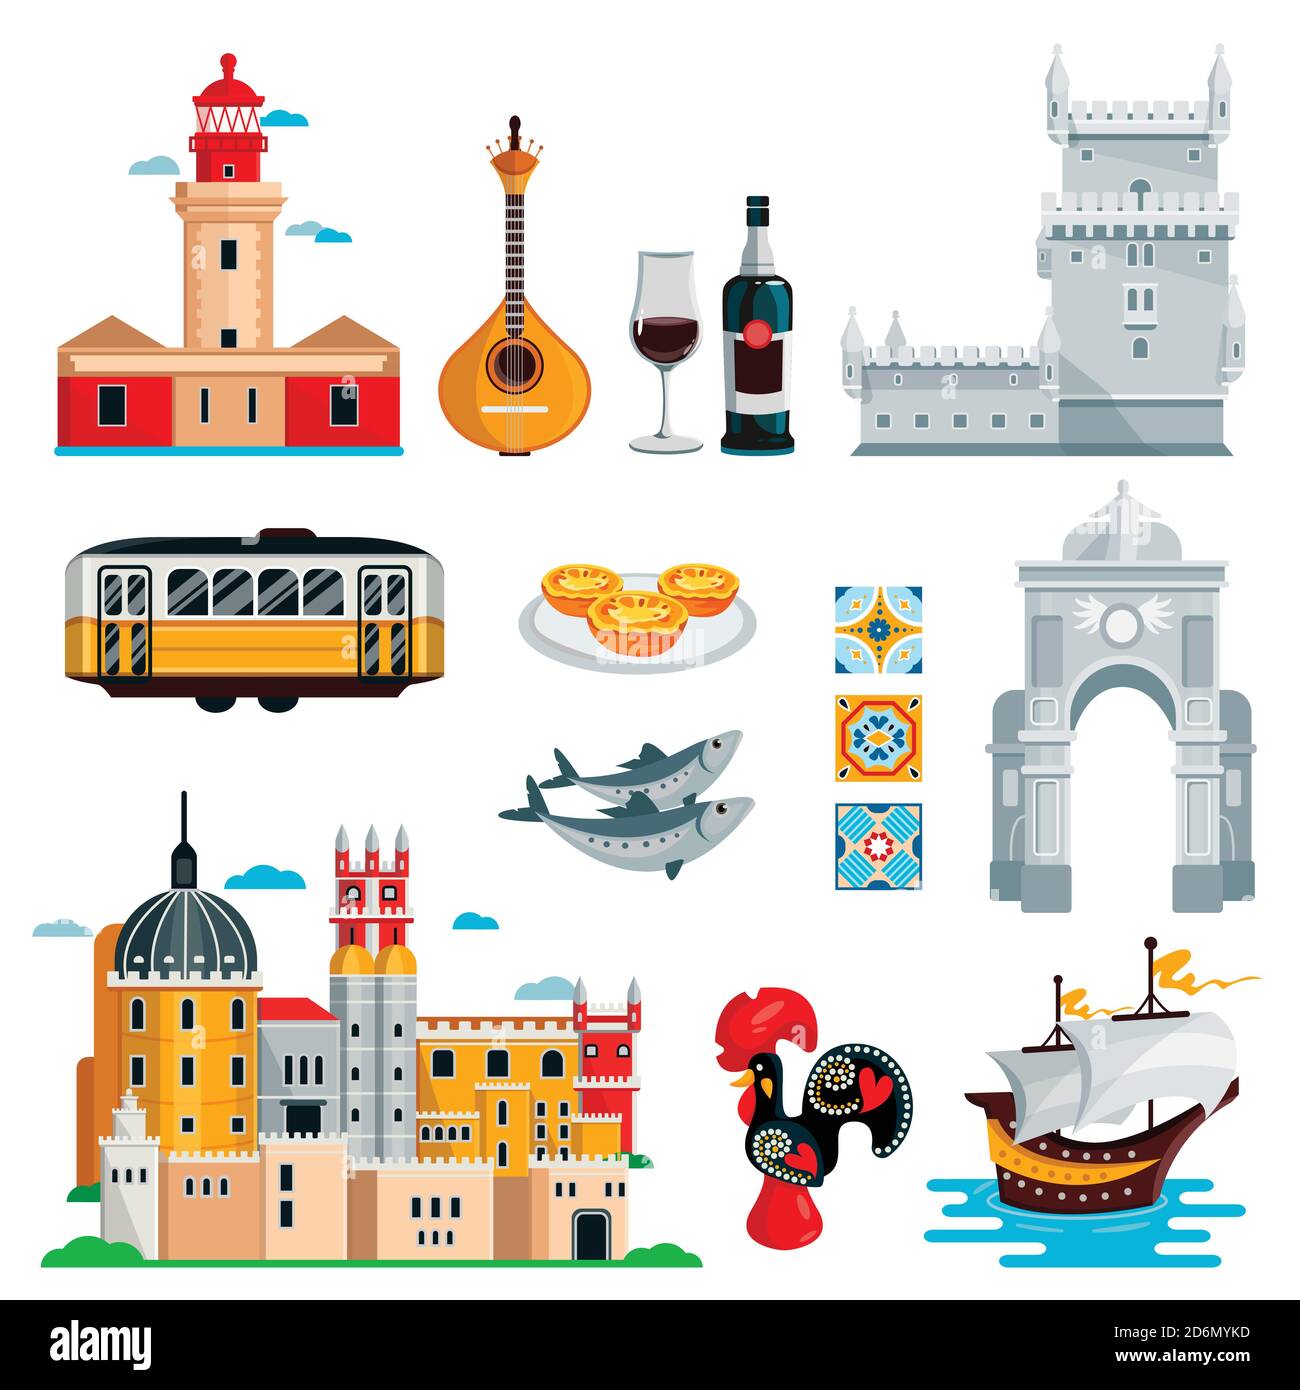 Voyagez au Portugal avec des icônes et des éléments de design isolés. Symboles, nourriture et repères culturels vectoriels portugais et de Lisbonne. Illustration de Vecteur